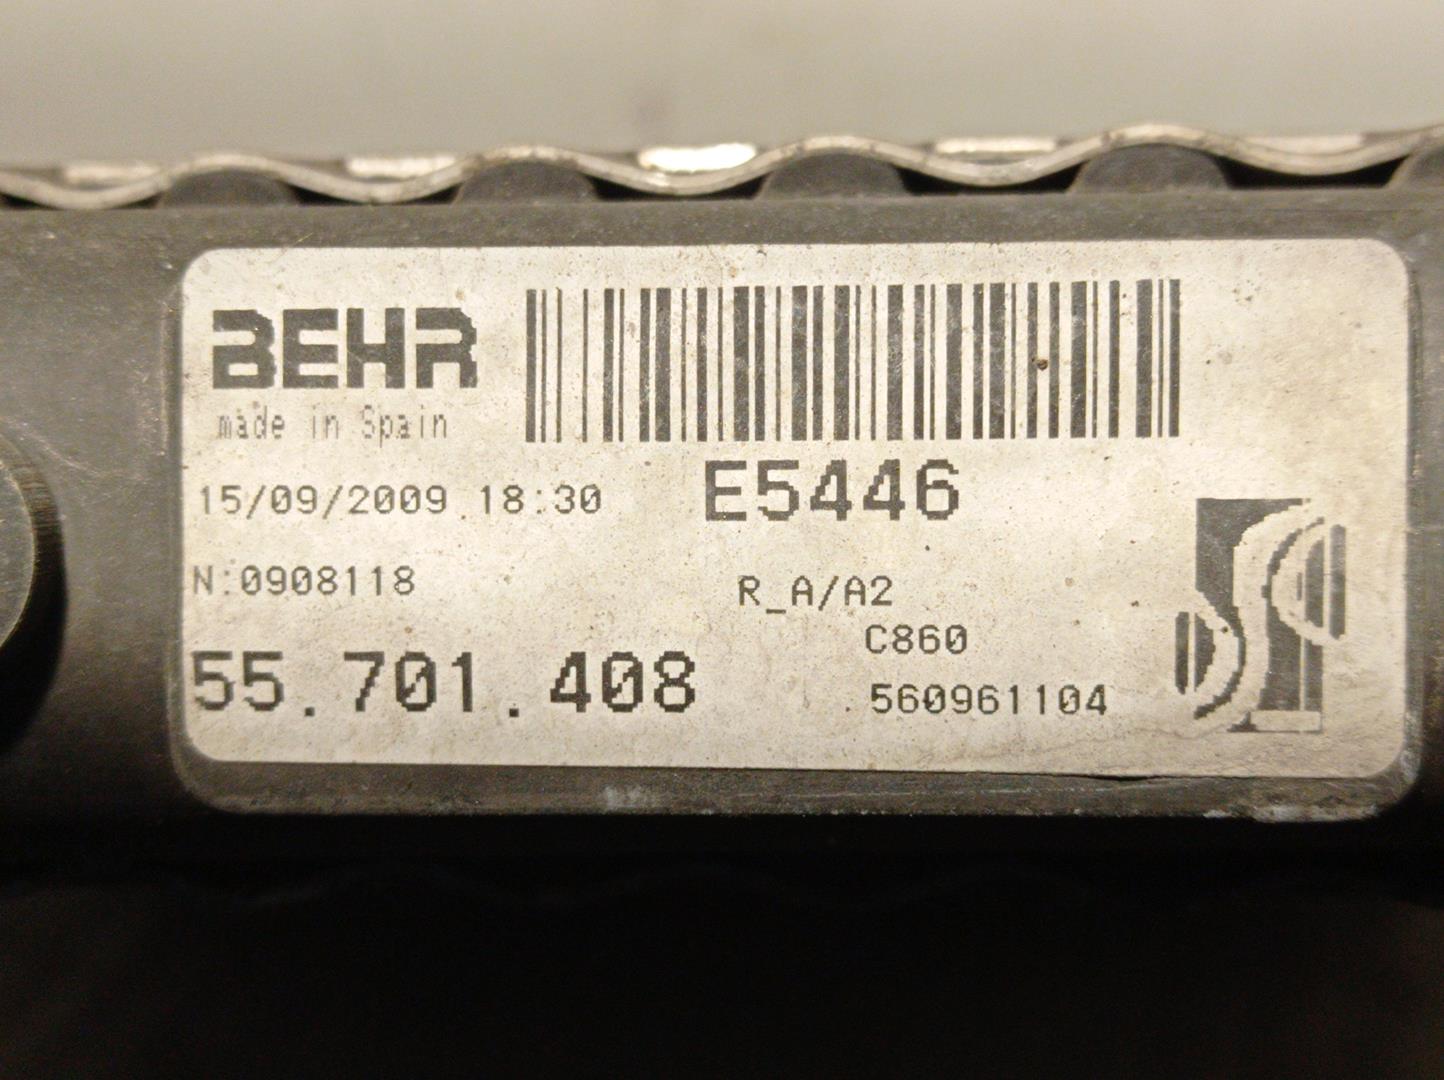 OPEL Corsa D (2006-2020) Air Con Radiator 55701408, E5446, BEHR 24214026